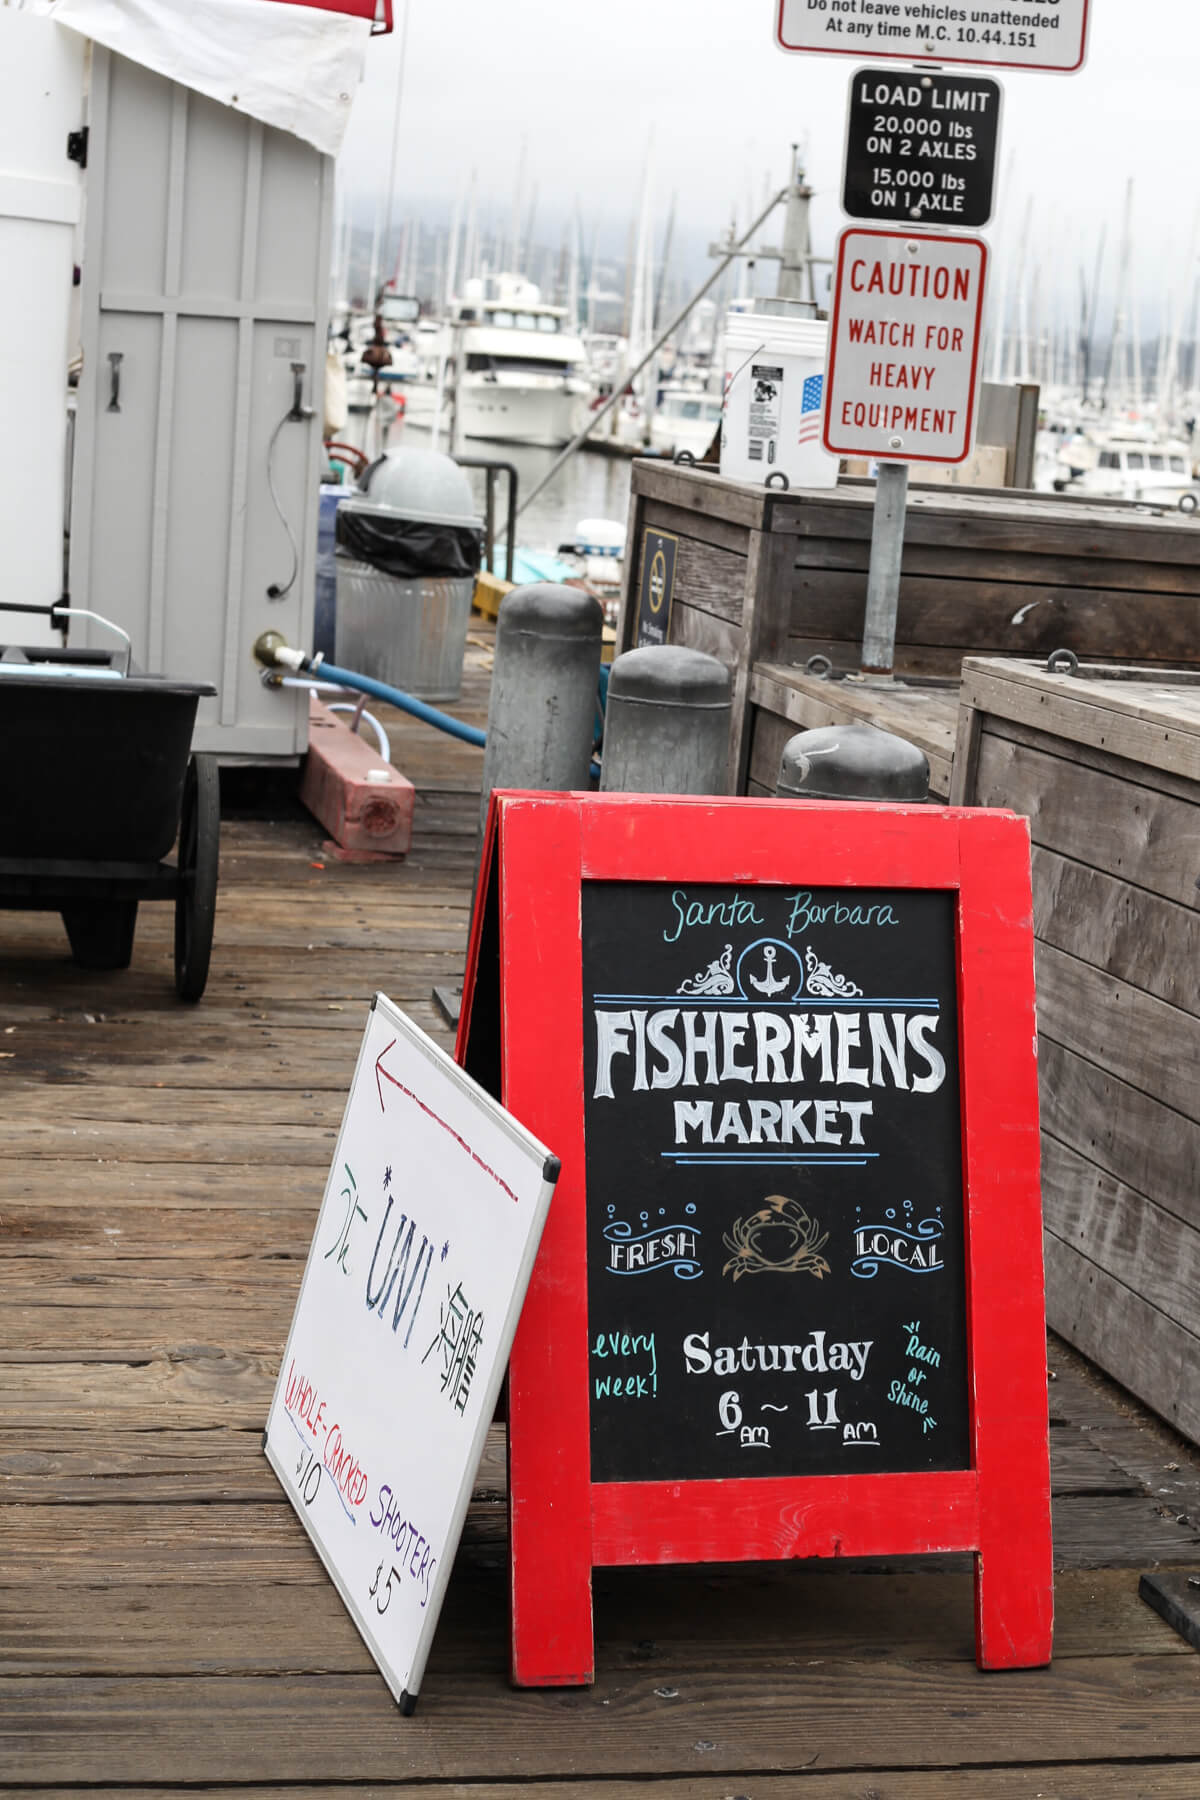 A red-framed chalkboard sign reading "Fishermen